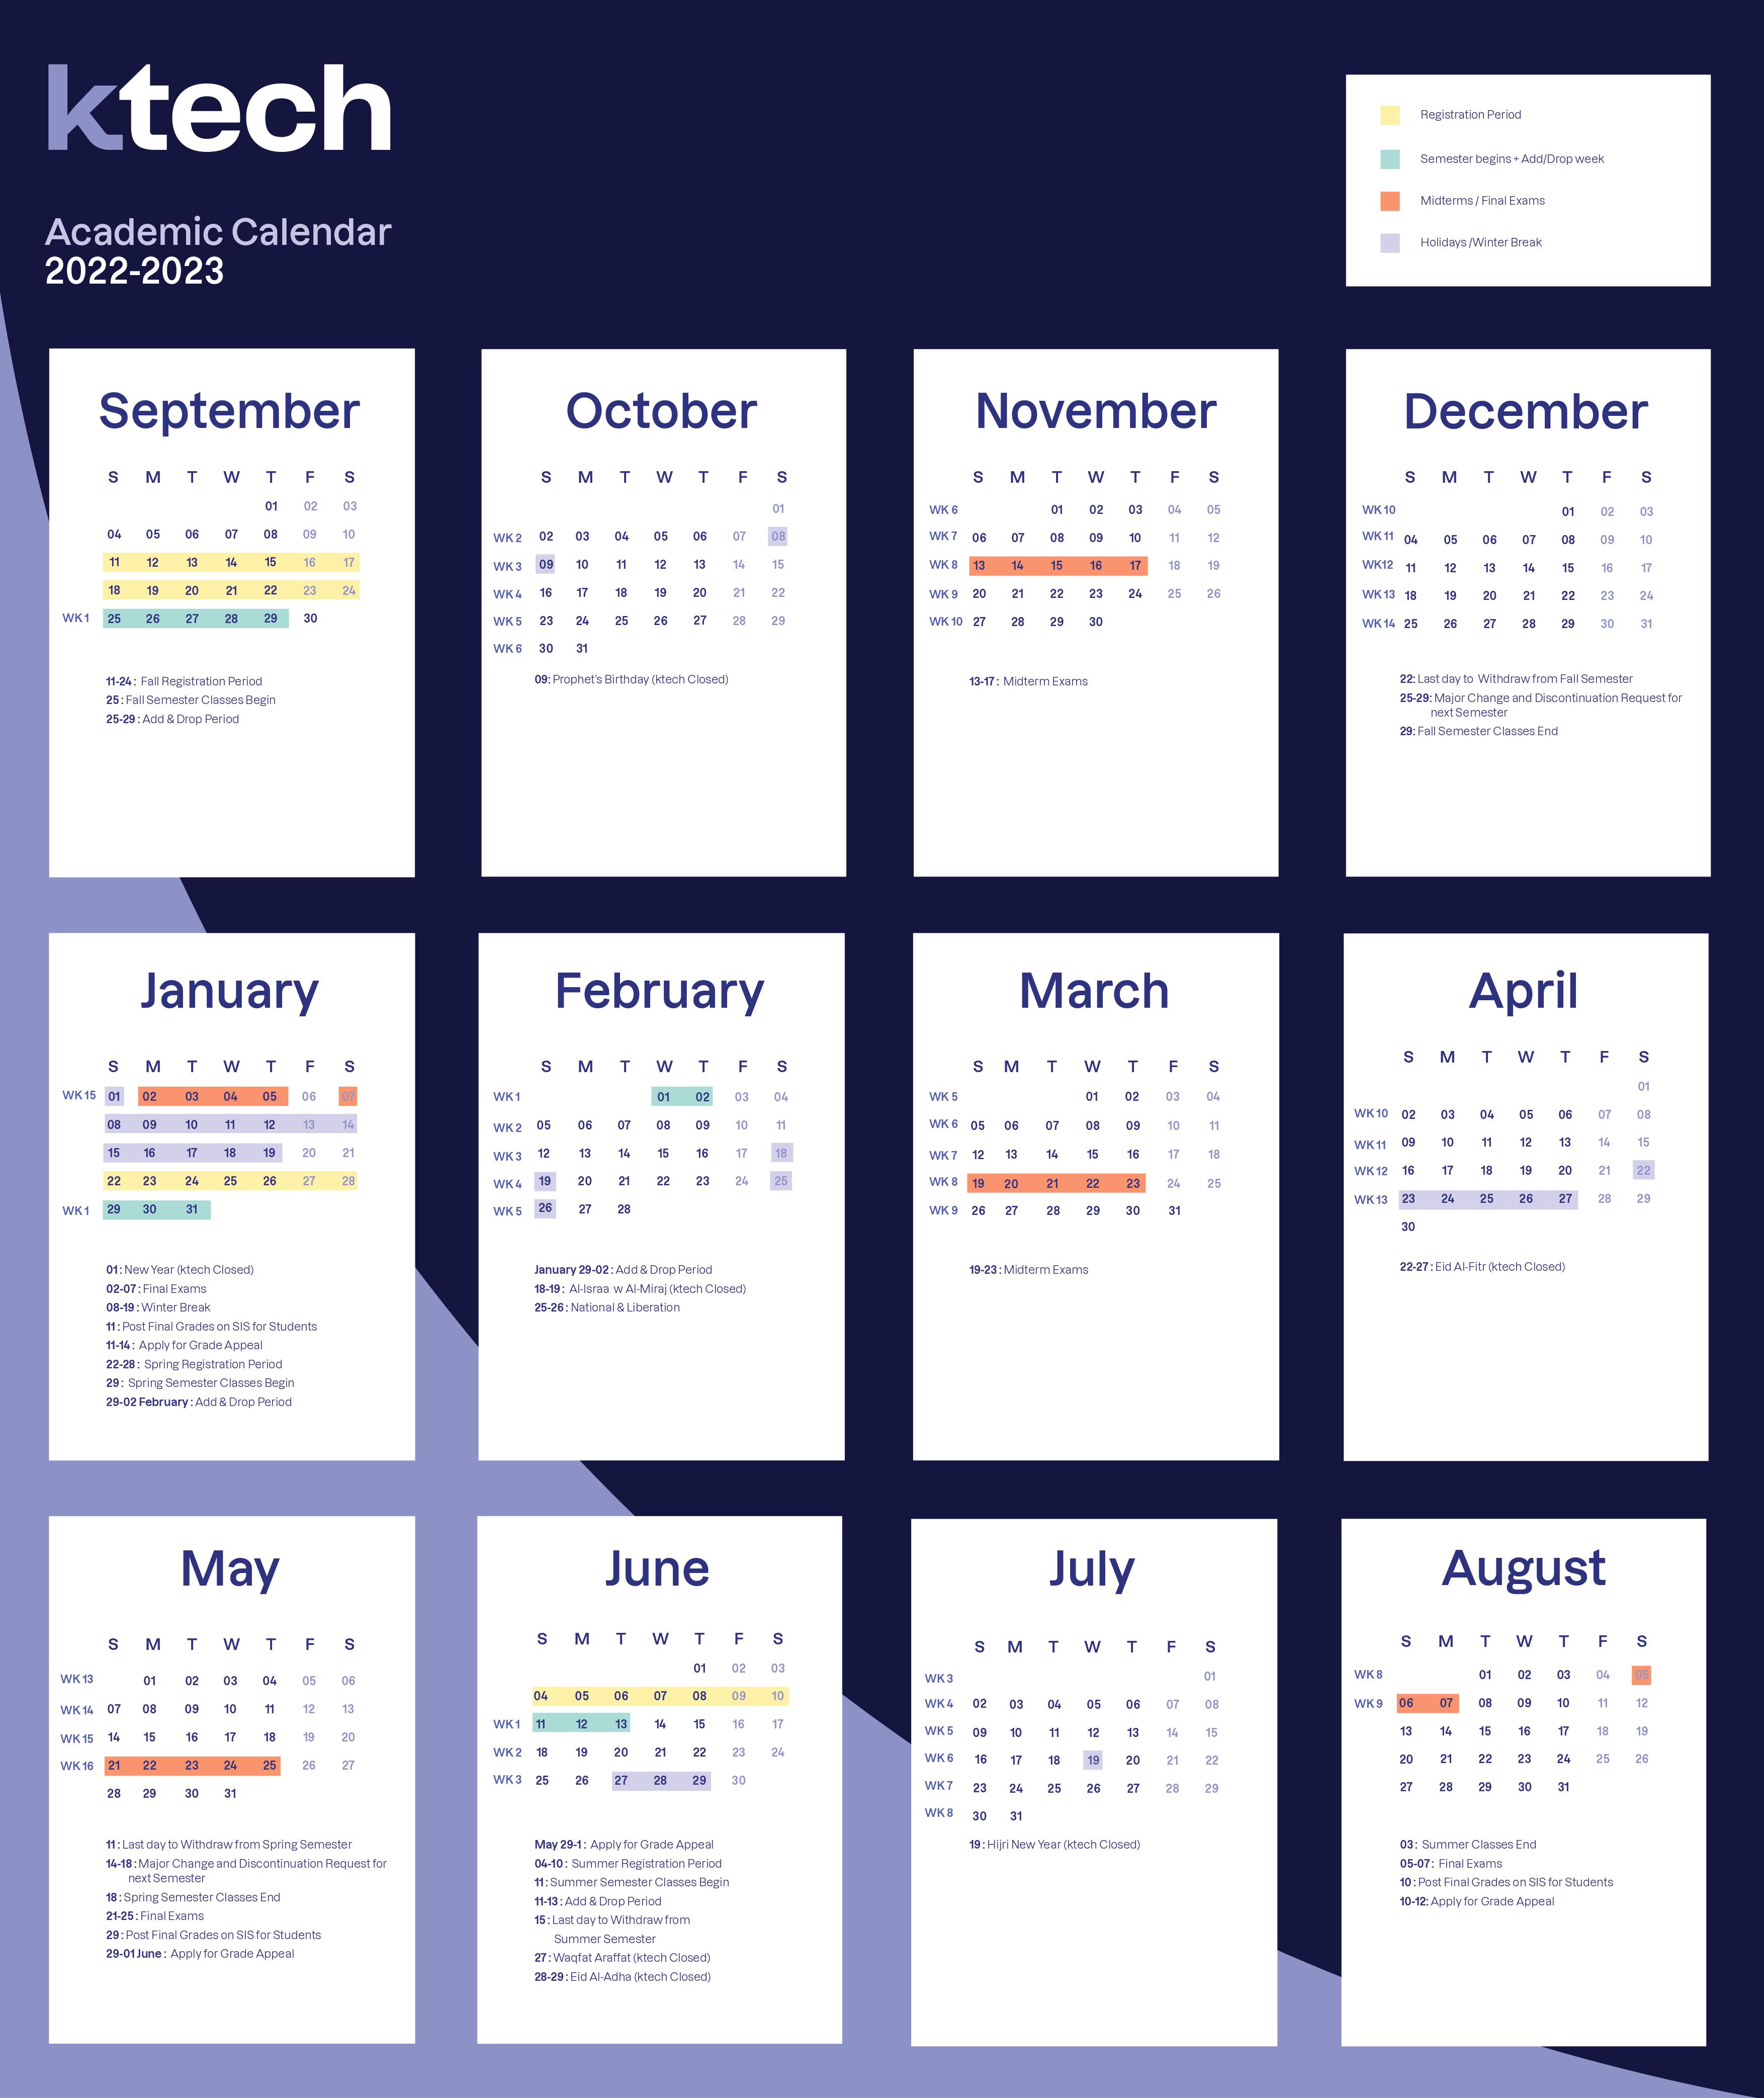 Academic Calendar | ktech